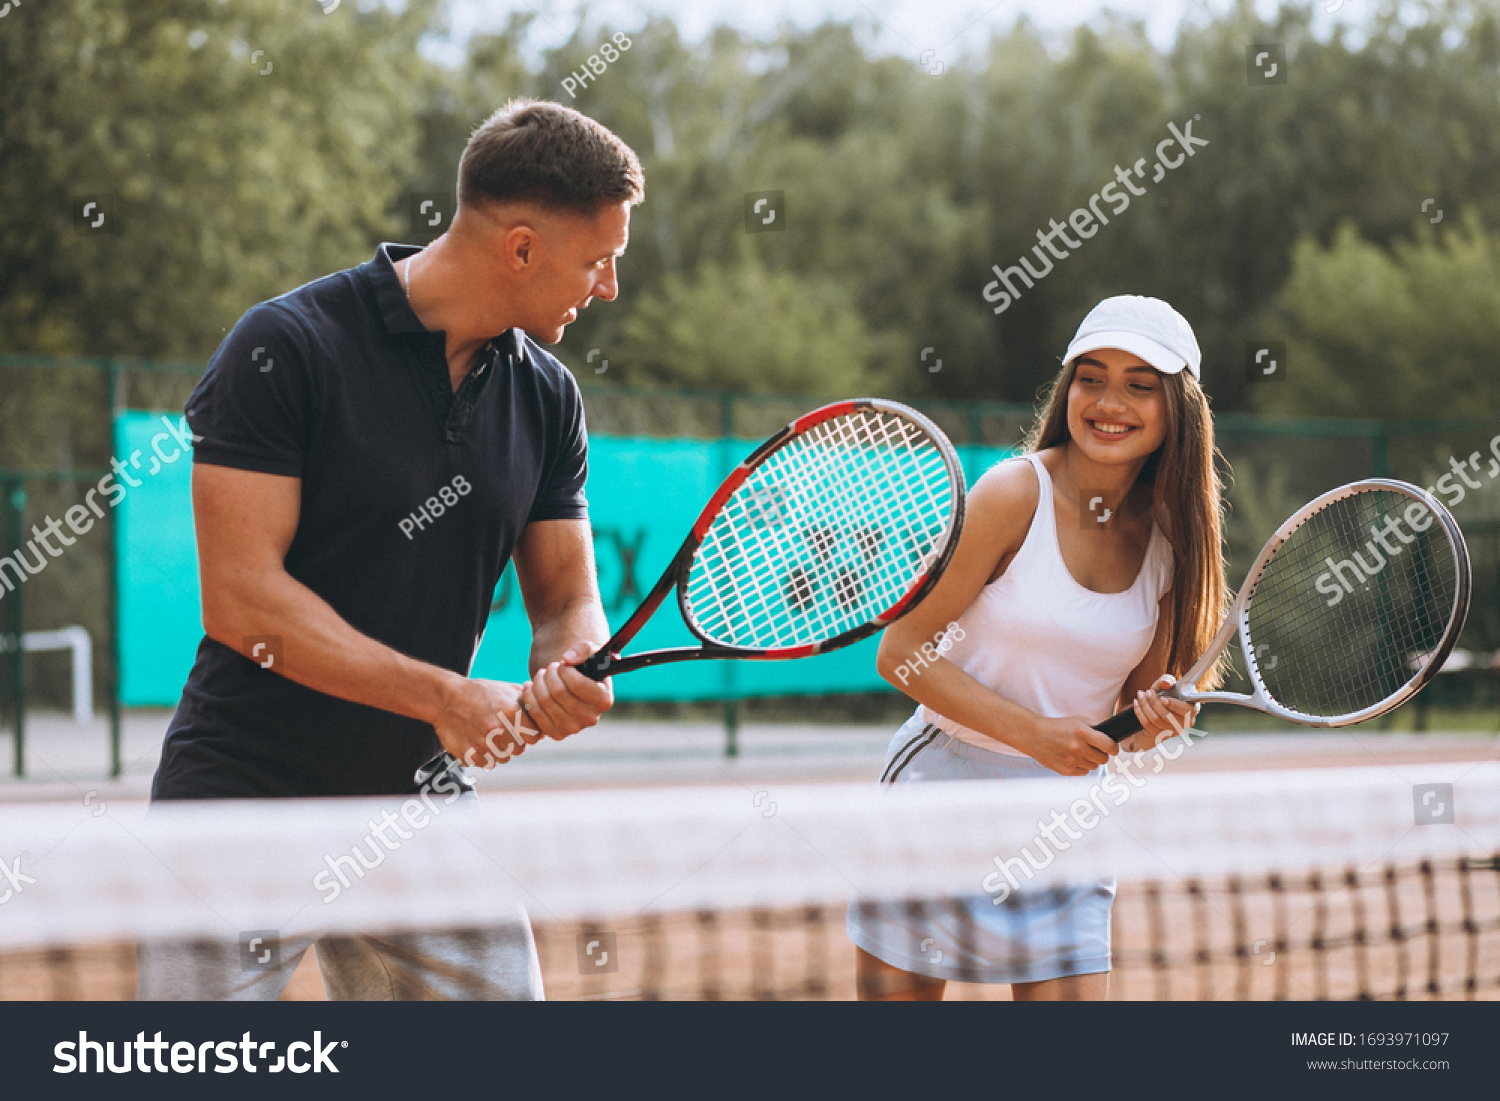 Теннисист ебёт подругу жены на кухне а про теннис забыл